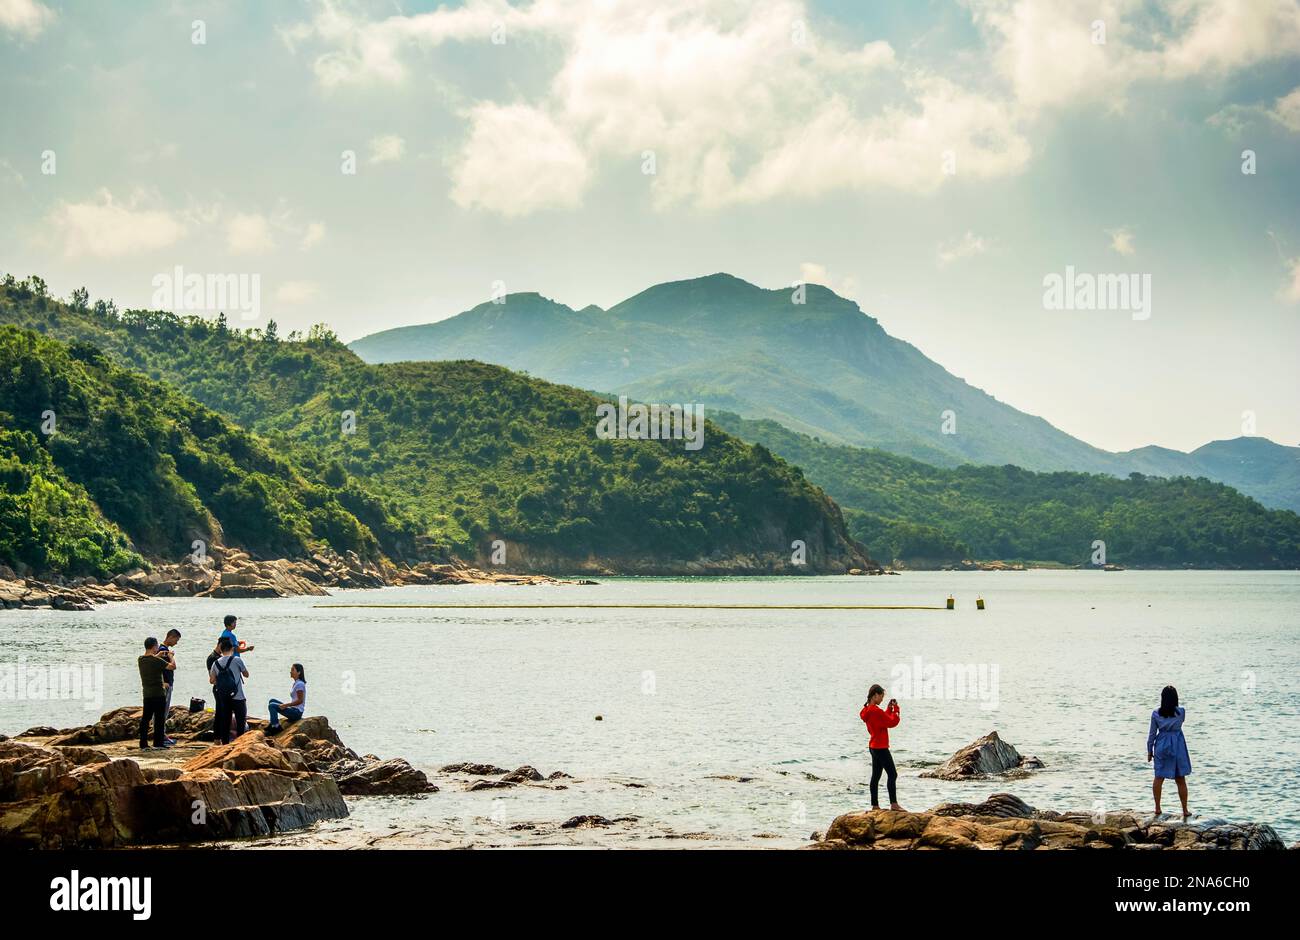 Persone che scattano foto su una spiaggia rurale su un'isola di Hong Kong con uno sfondo montuoso Foto Stock